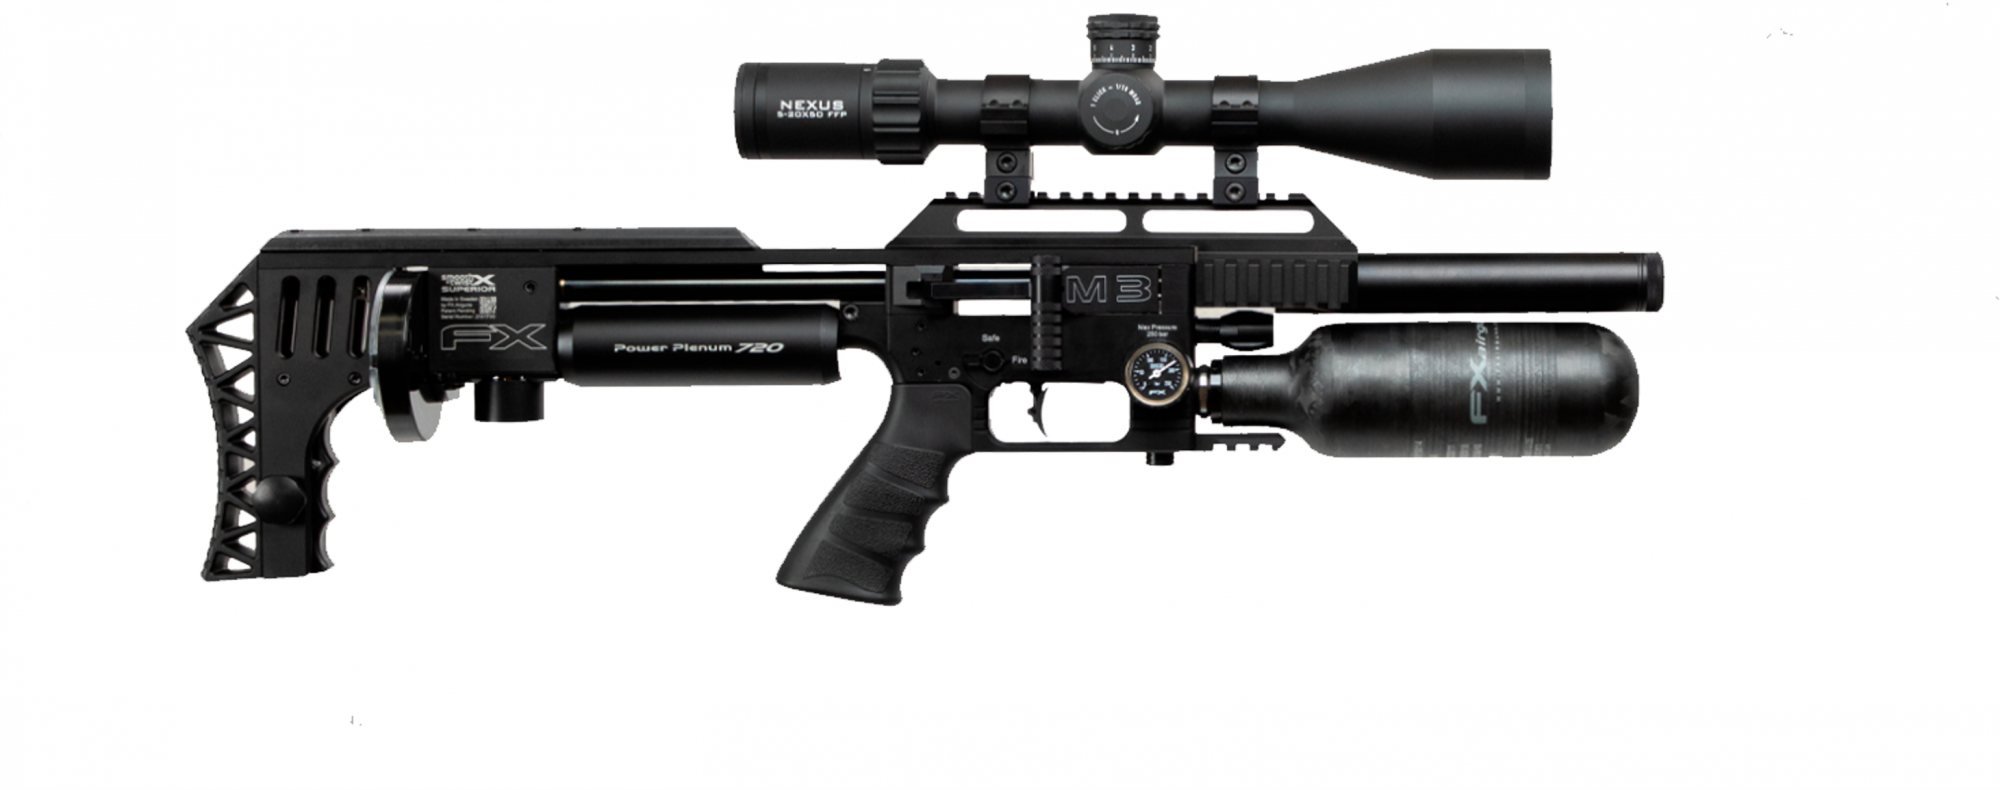 Fx Airguns Fx Impact M3 Black Compact Pcp Air Rifle Rifleman Firearms 5672